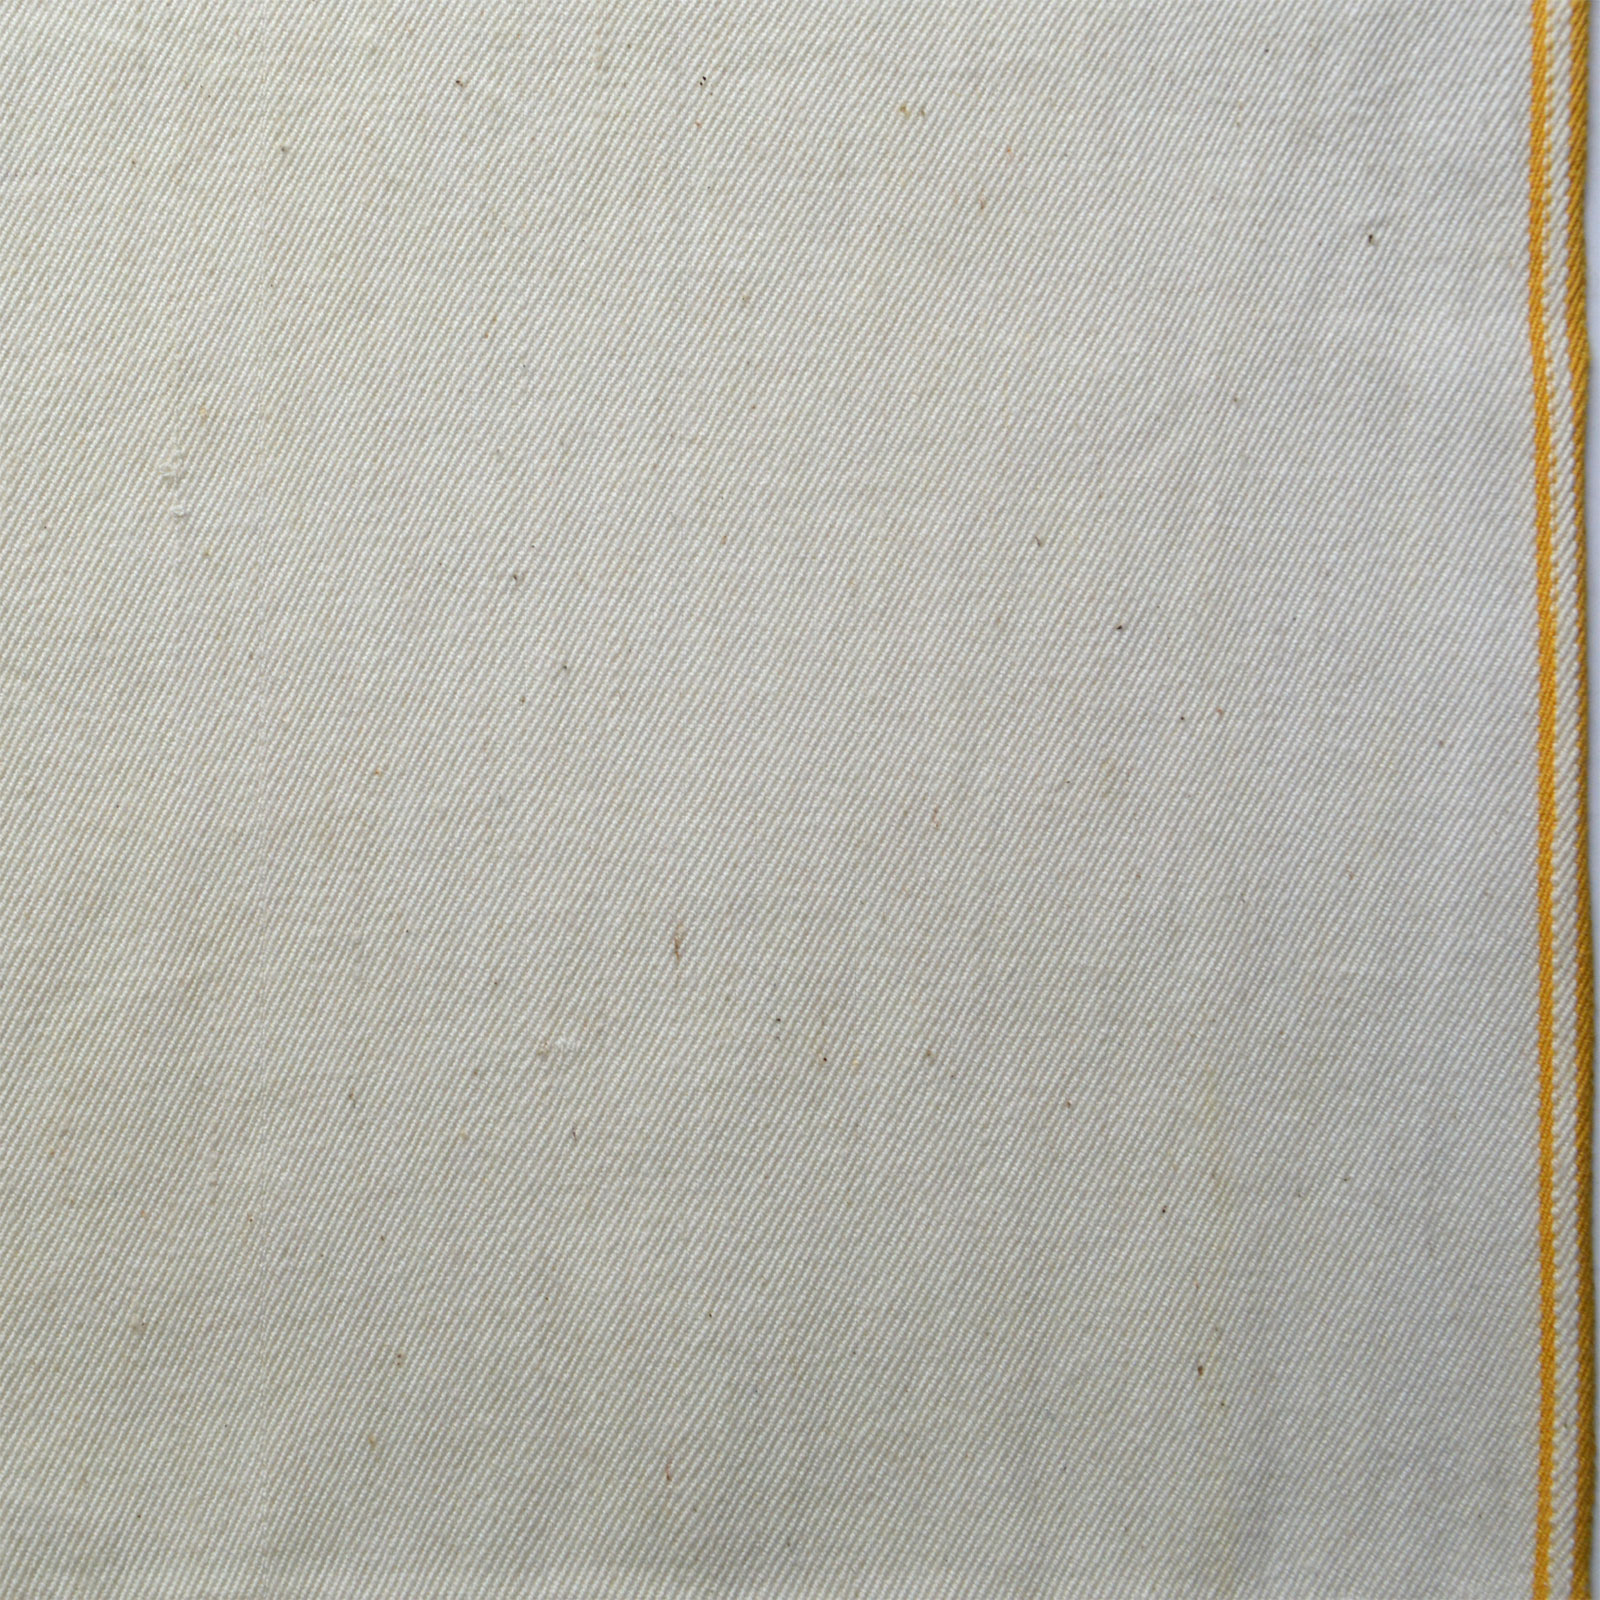 Denim Fabric – Pale Blue Washed Rigid 12oz – 155cm Wide